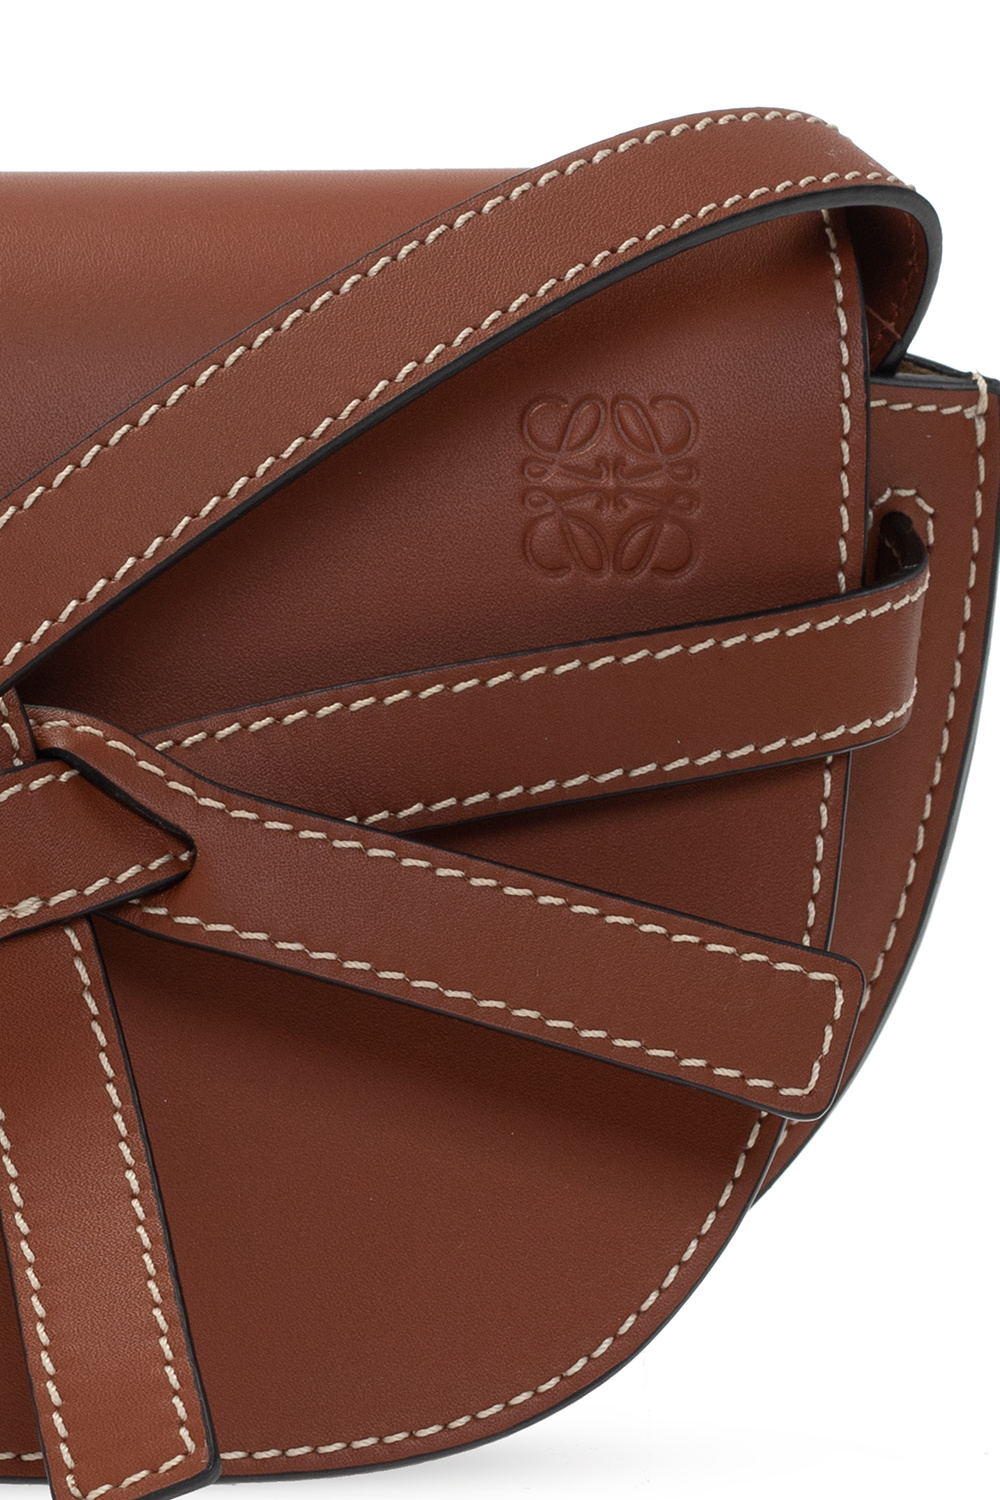 Loewe Gate Pocket Leather Shoulder Bag In Rust Color